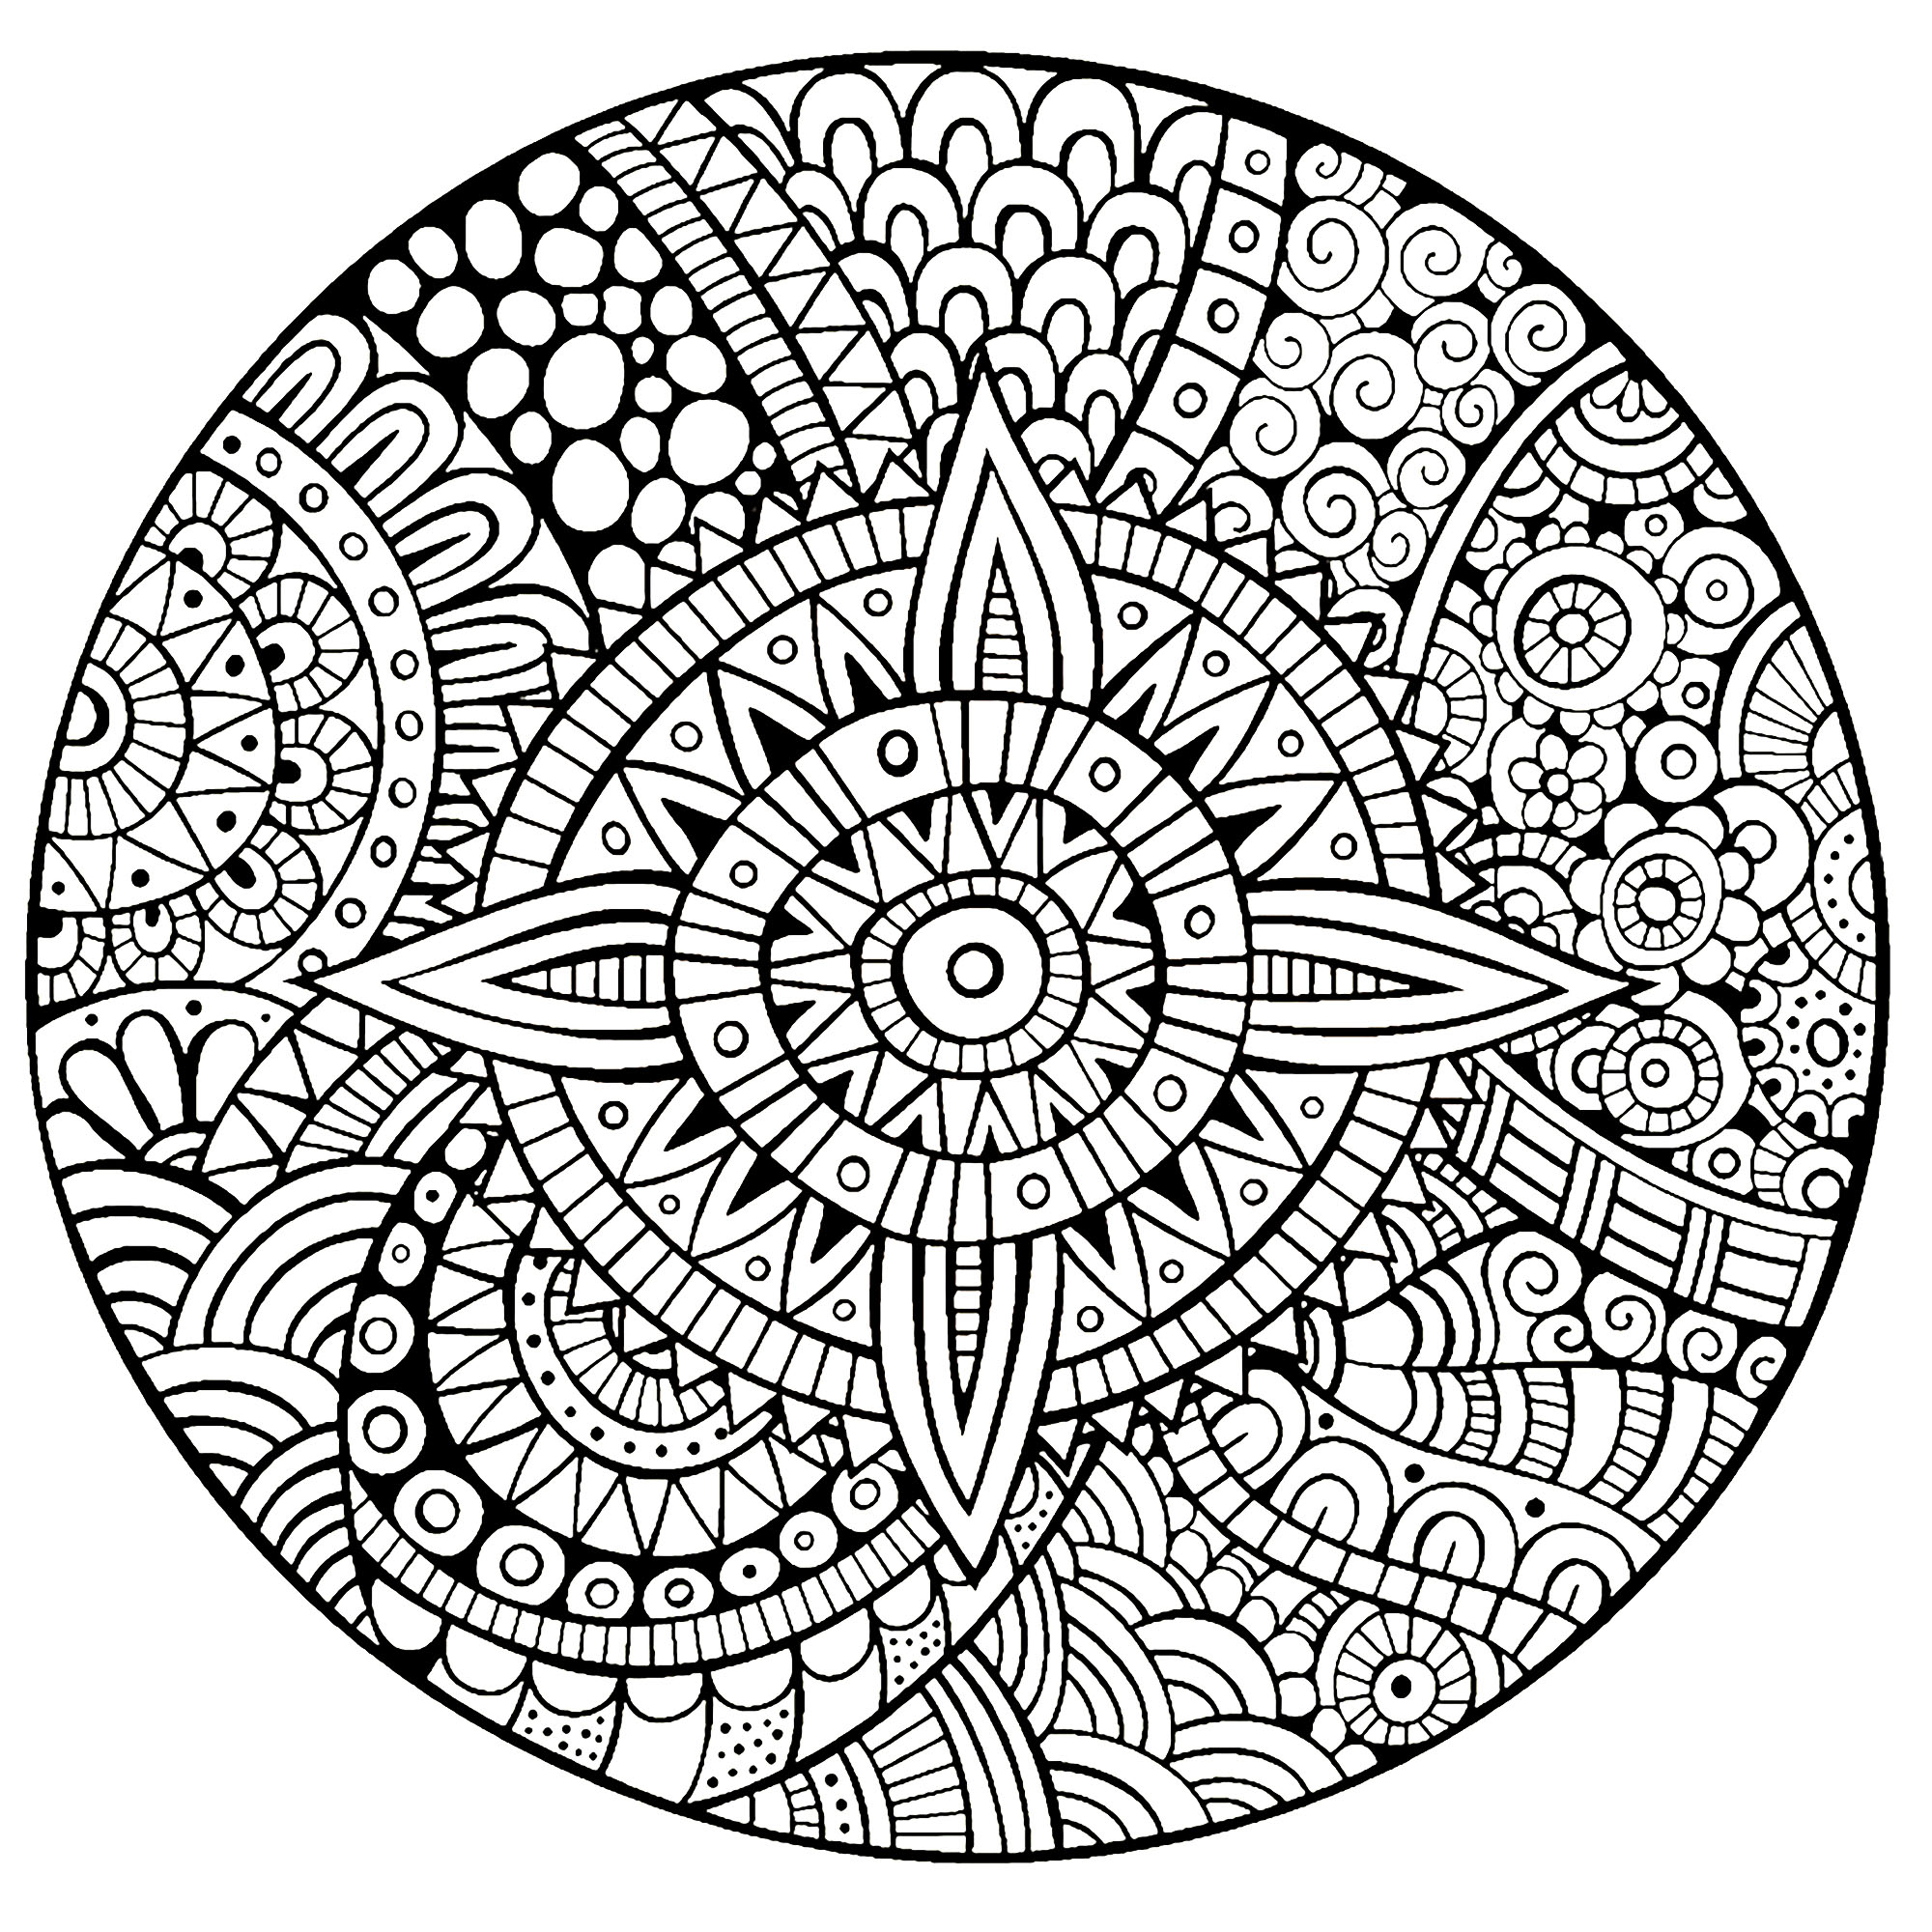 Un Mandala garantito 100% Zen, per un momento di puro relax. Sentirete presto i benefici della colorazione grazie a questo disegno assolutamente unico e rilassante.